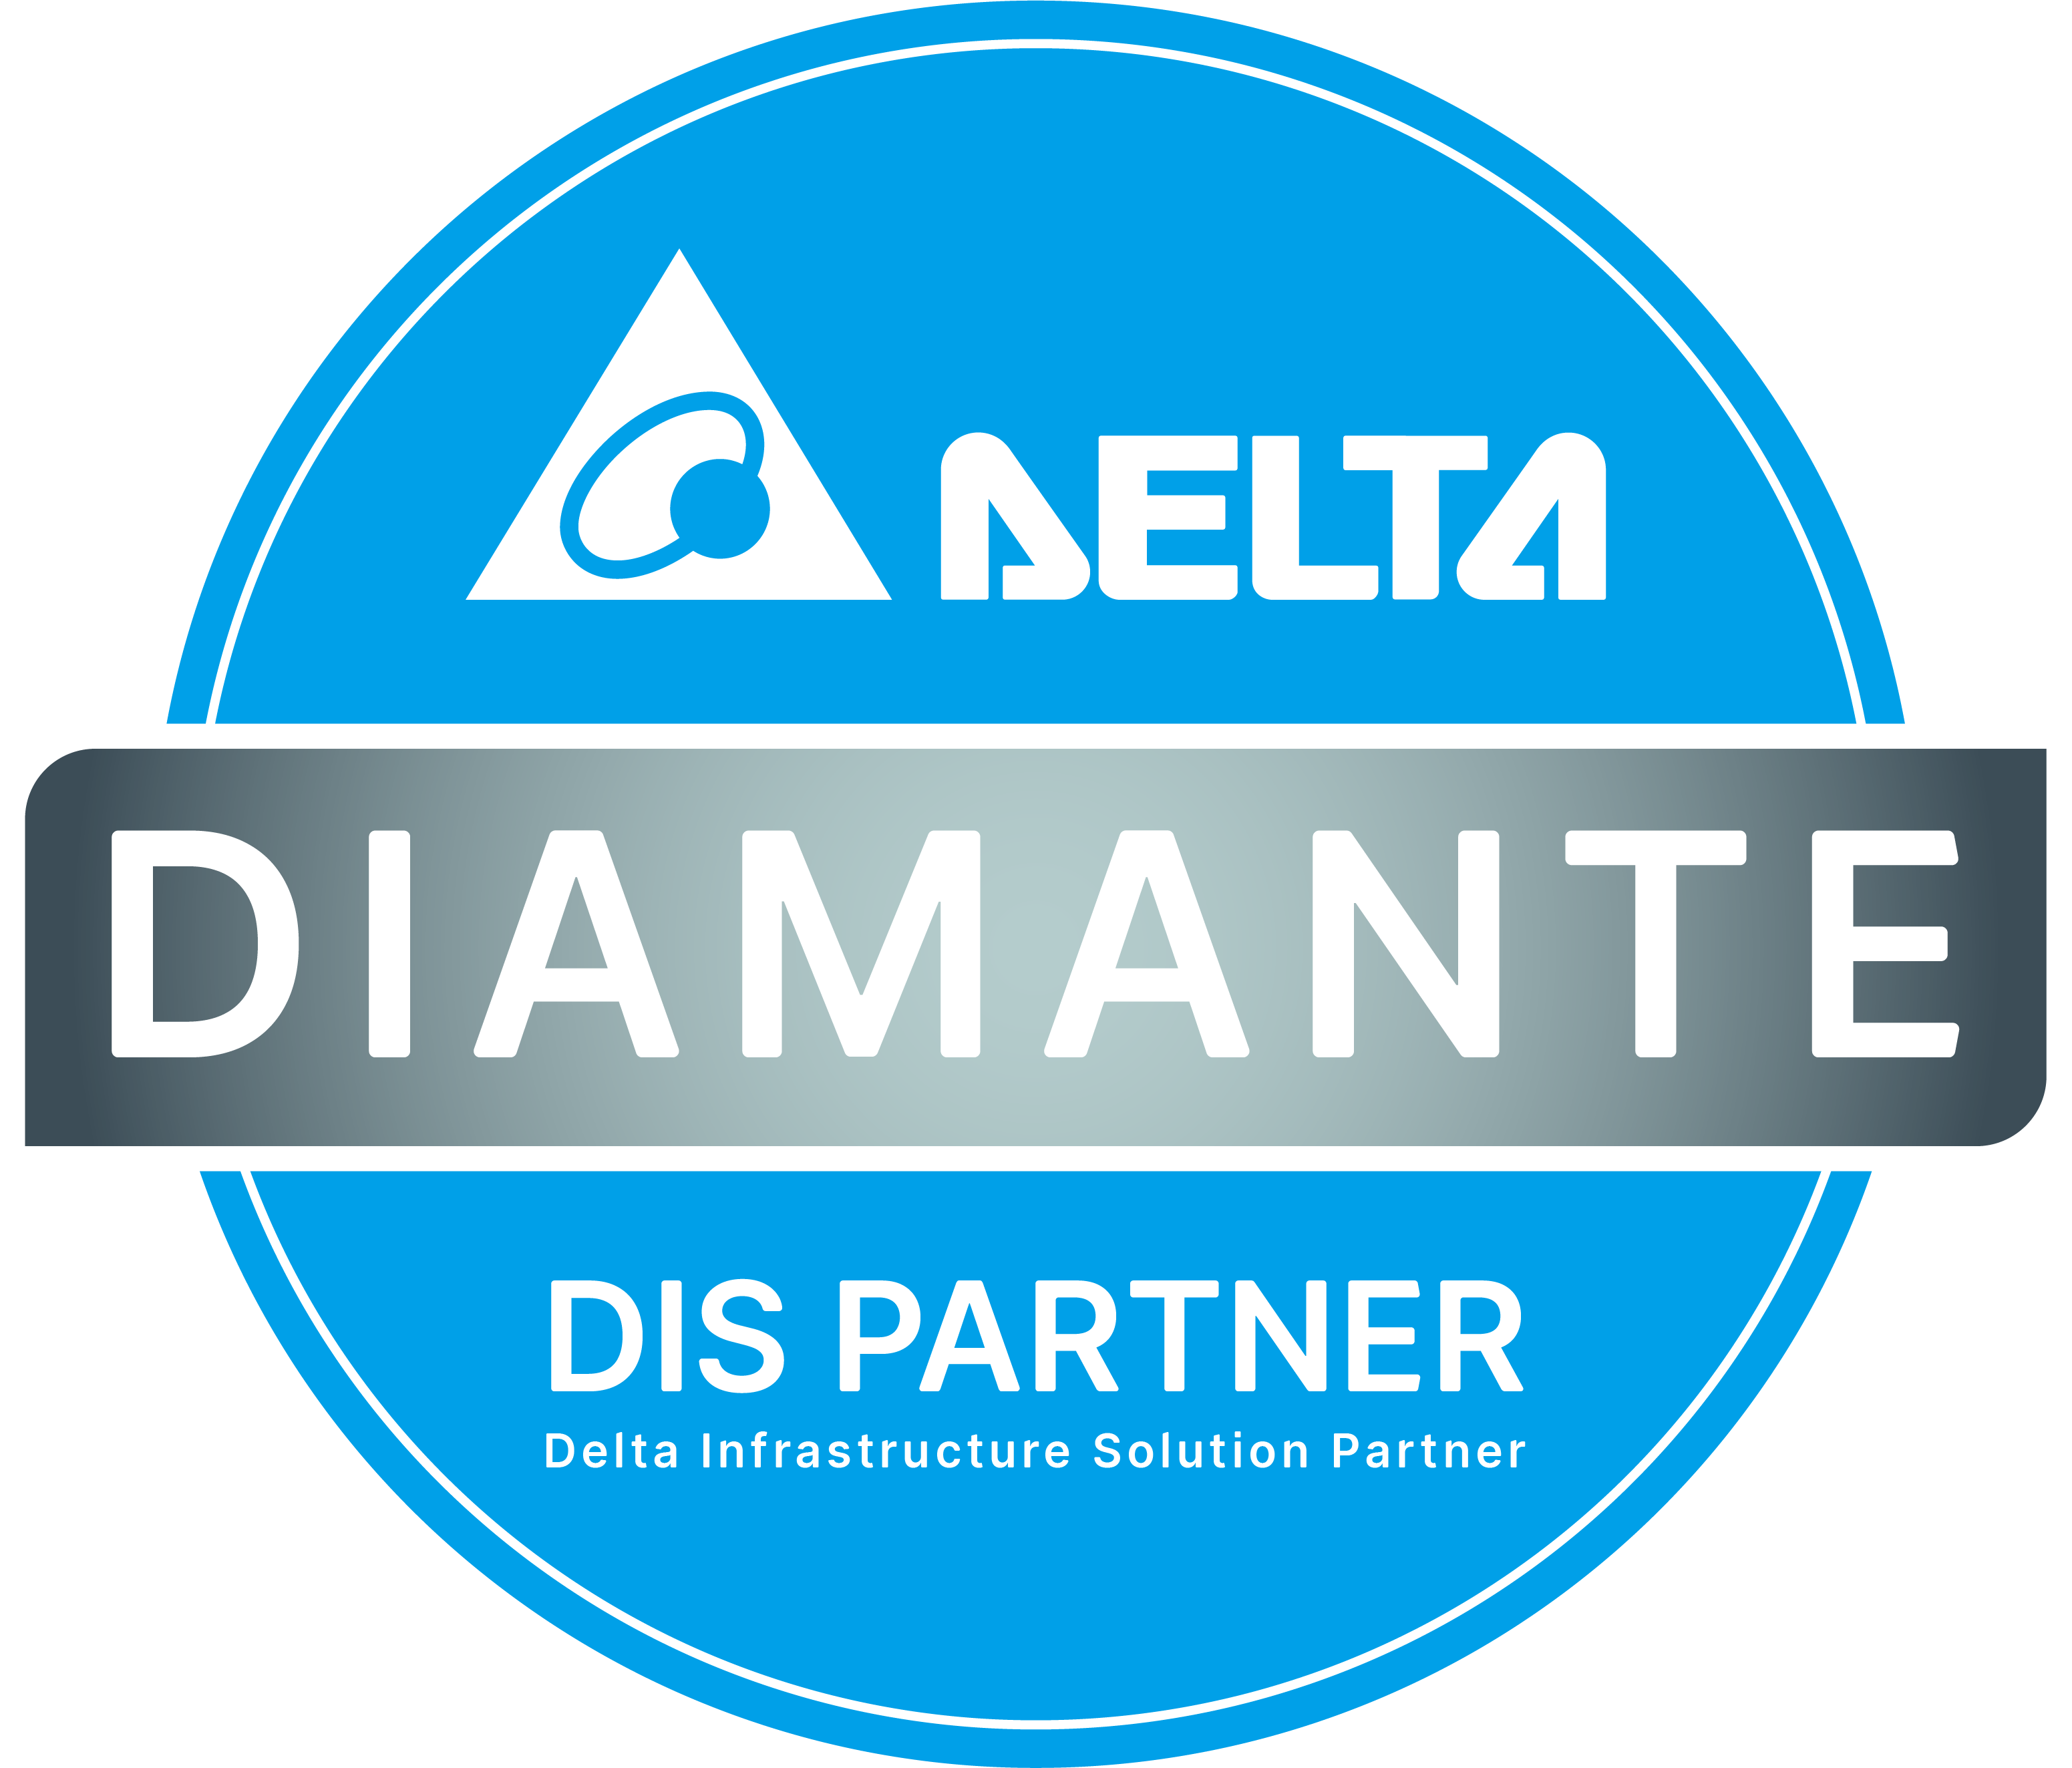 estamos orgulhosos em anunciar que recebemos a classificação DIS - Delta Infrastructure Solution Partner nível Diamante.